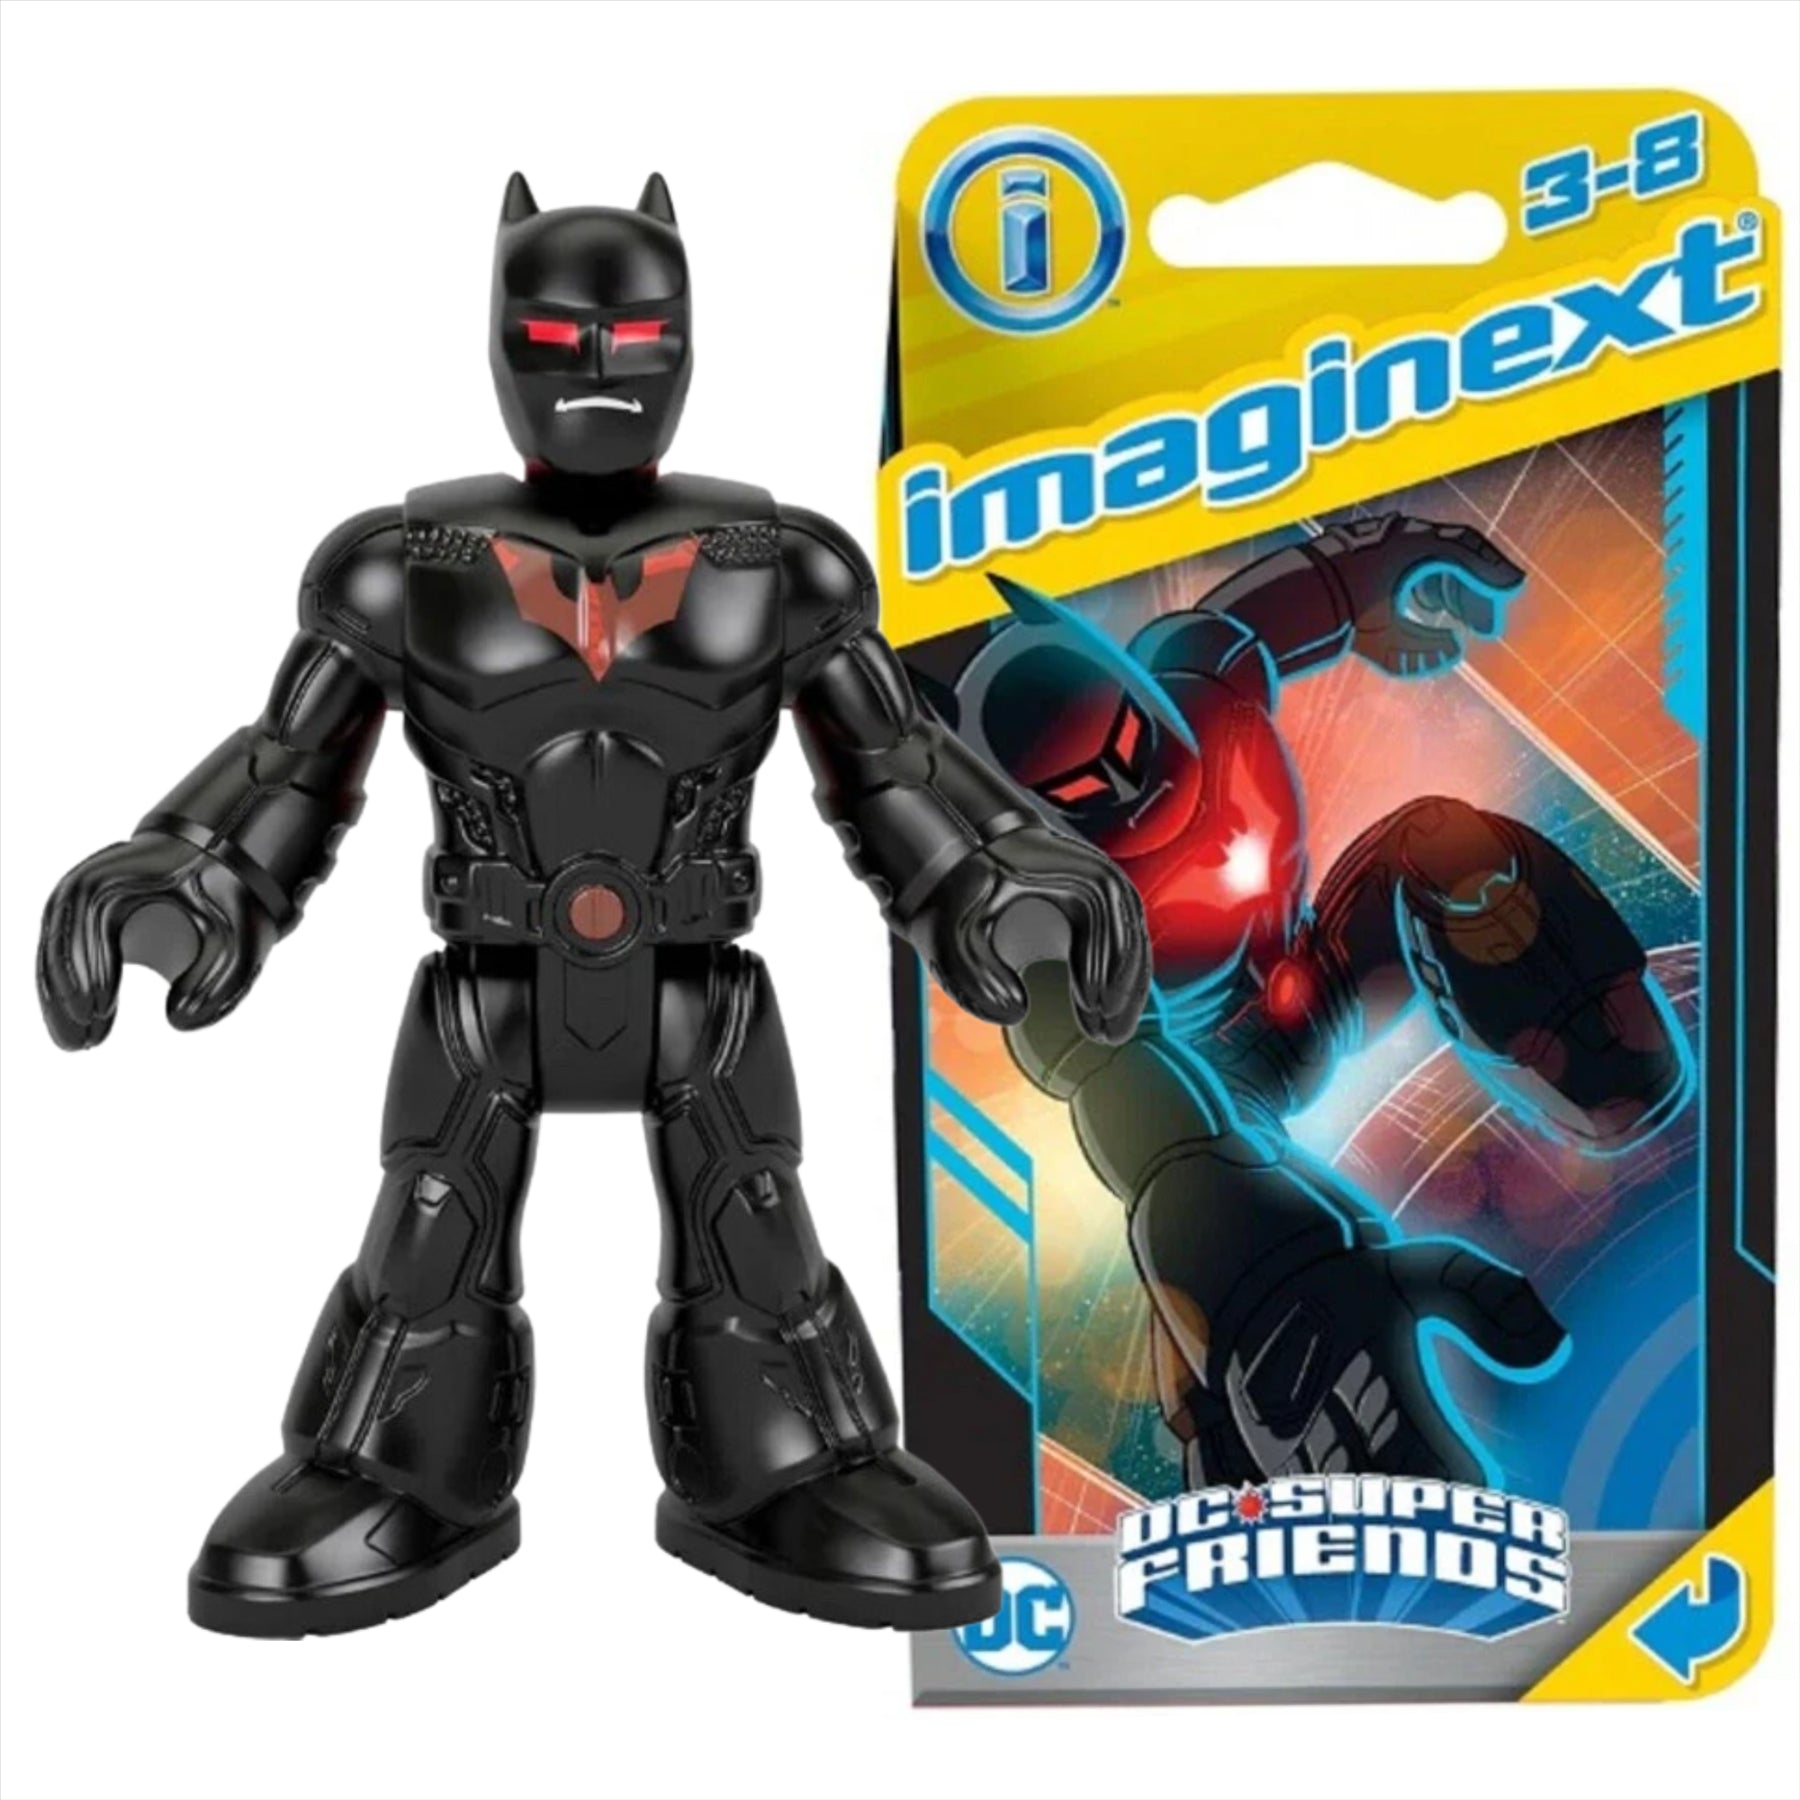 Imaginext DC Super Friends Batman Beyond Miniature Action Figure Play Toy